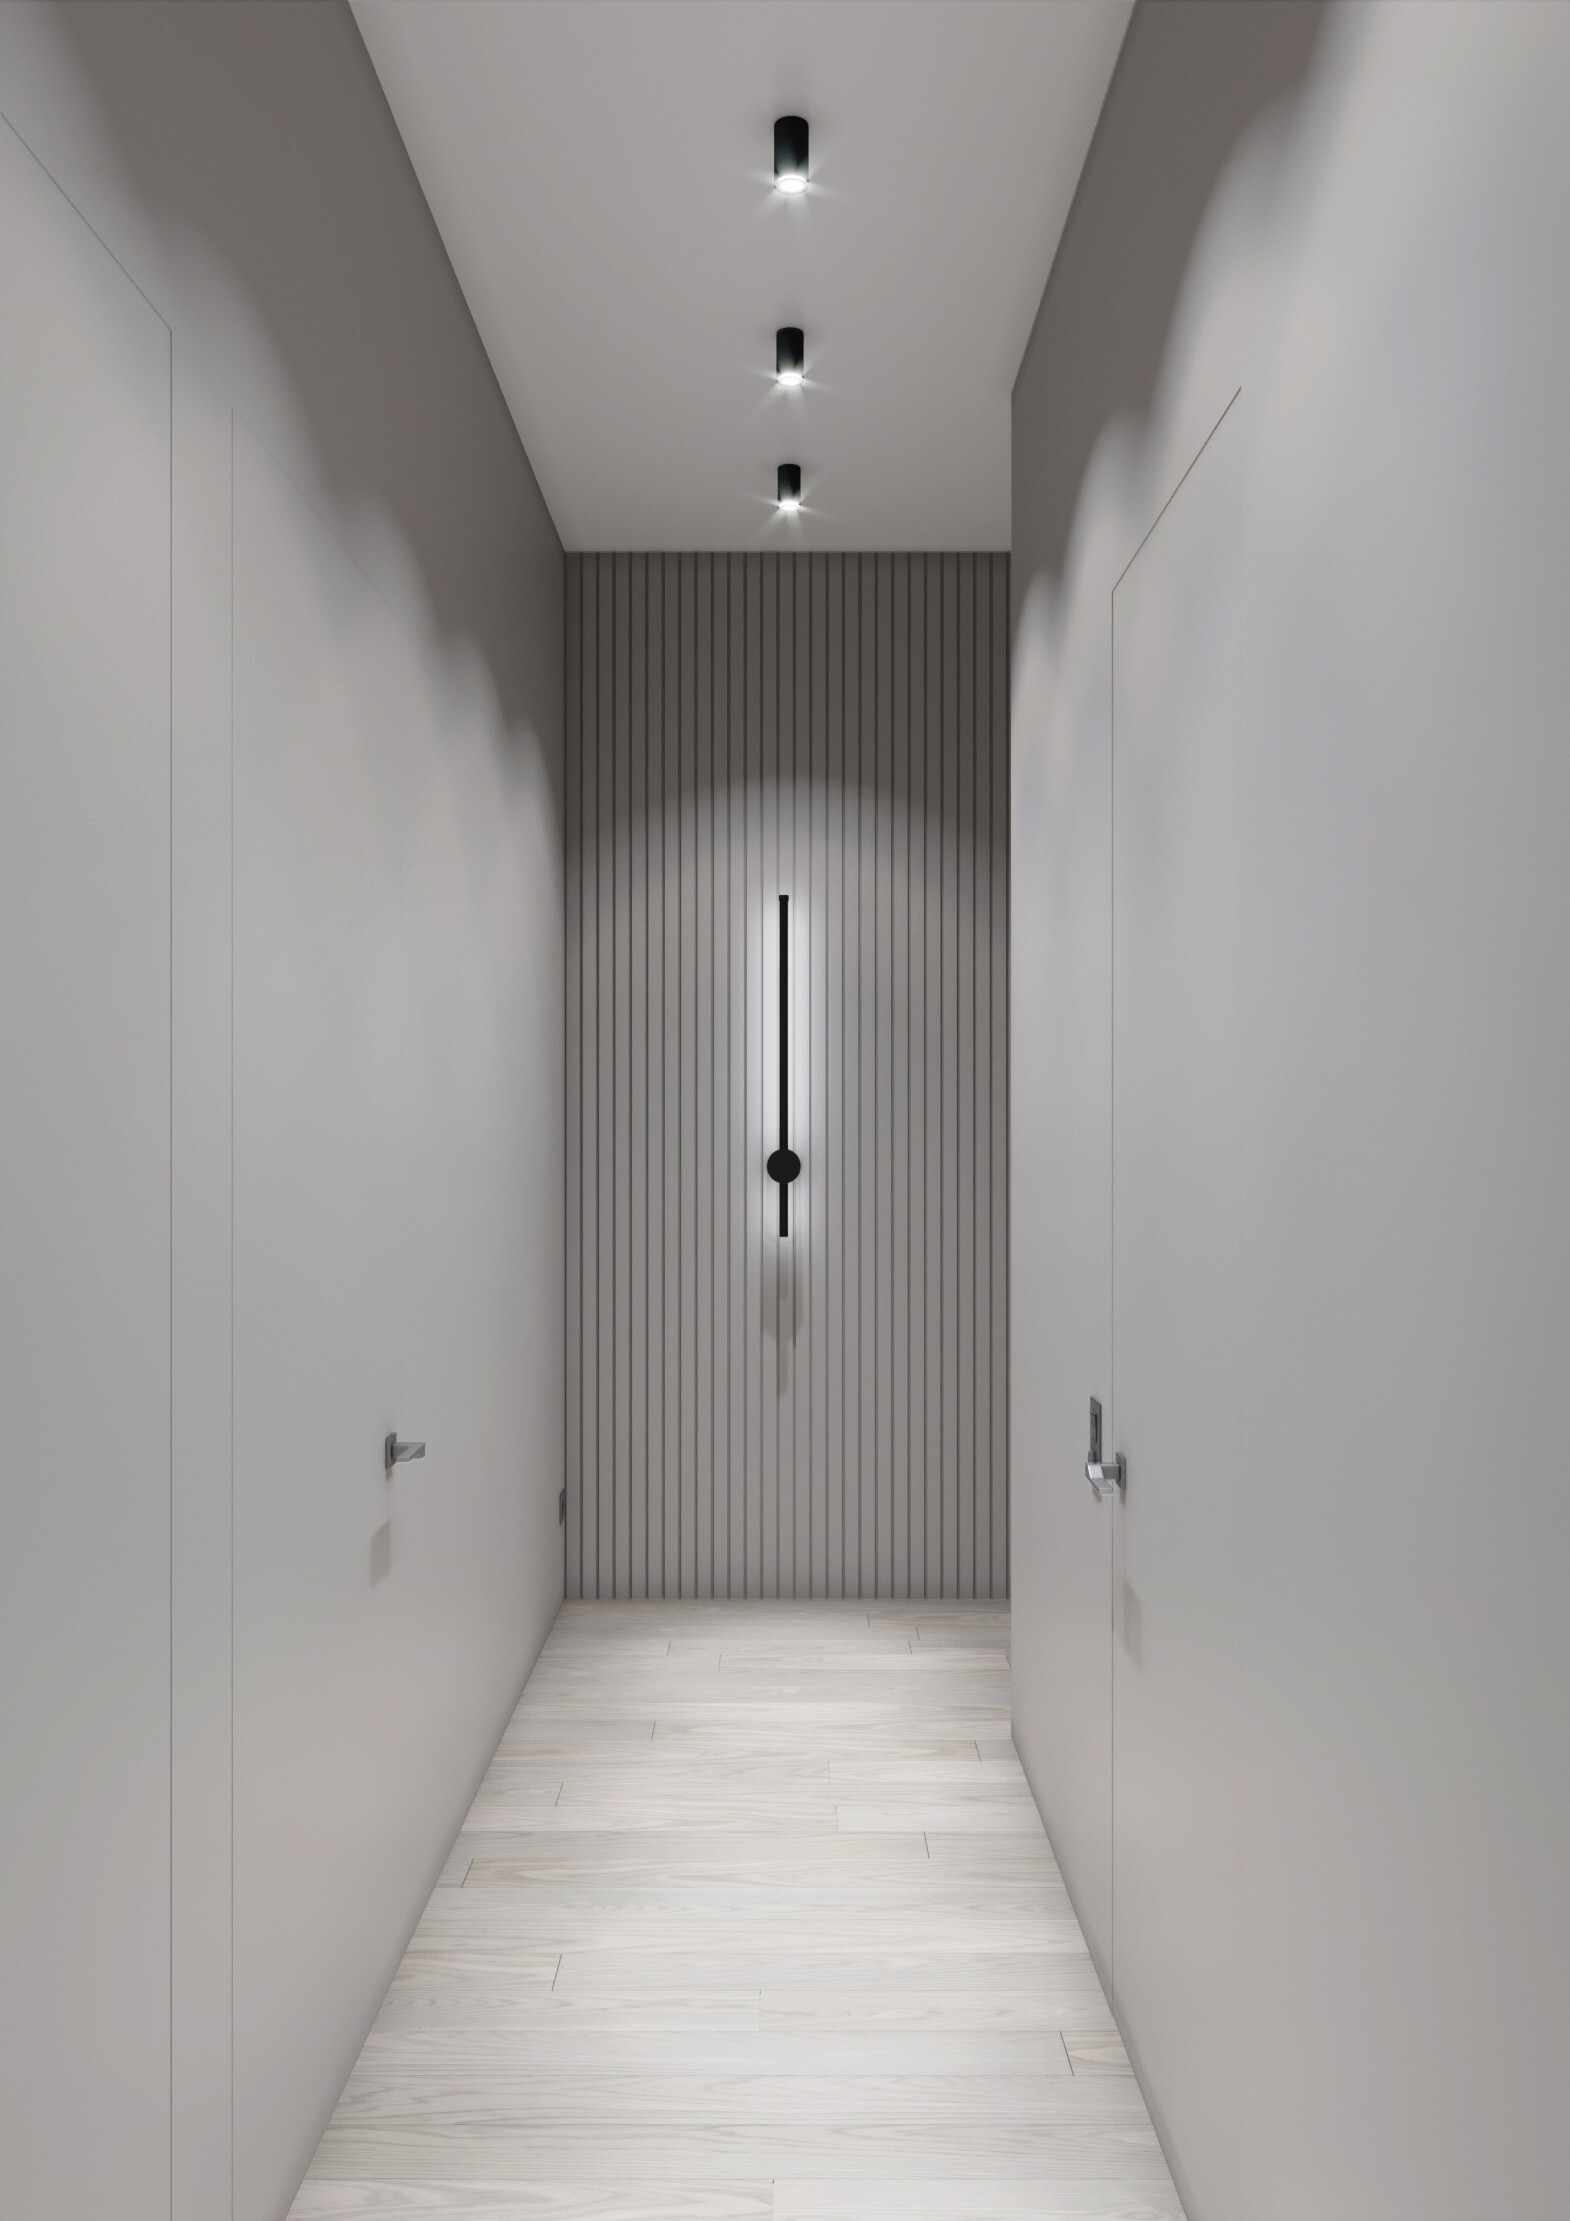 Интерьер коридора cветовыми линиями, подсветкой настенной и подсветкой светодиодной в современном стиле